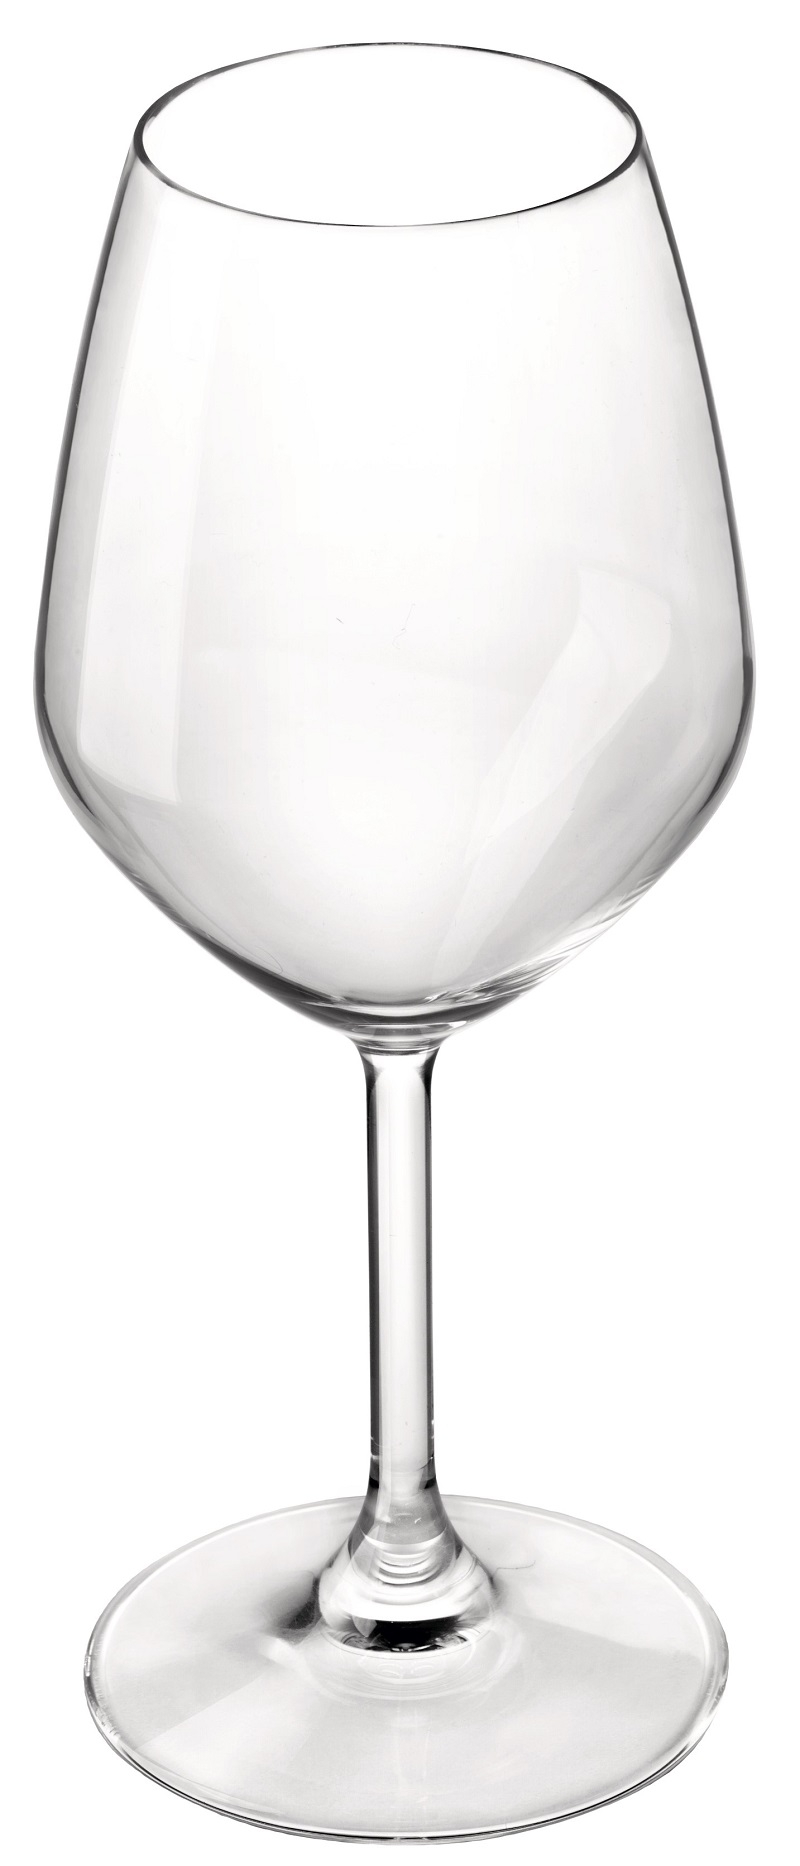 Ποτήρι Κρασιού Σετ 6τμχ Γυάλινο Divino Διάφανο Bormioli Rocco 445ml BR00126999 (Υλικό: Γυαλί, Χρώμα: Διάφανο , Μέγεθος: Κολωνάτο) - Bormioli Rocco - BR00126999